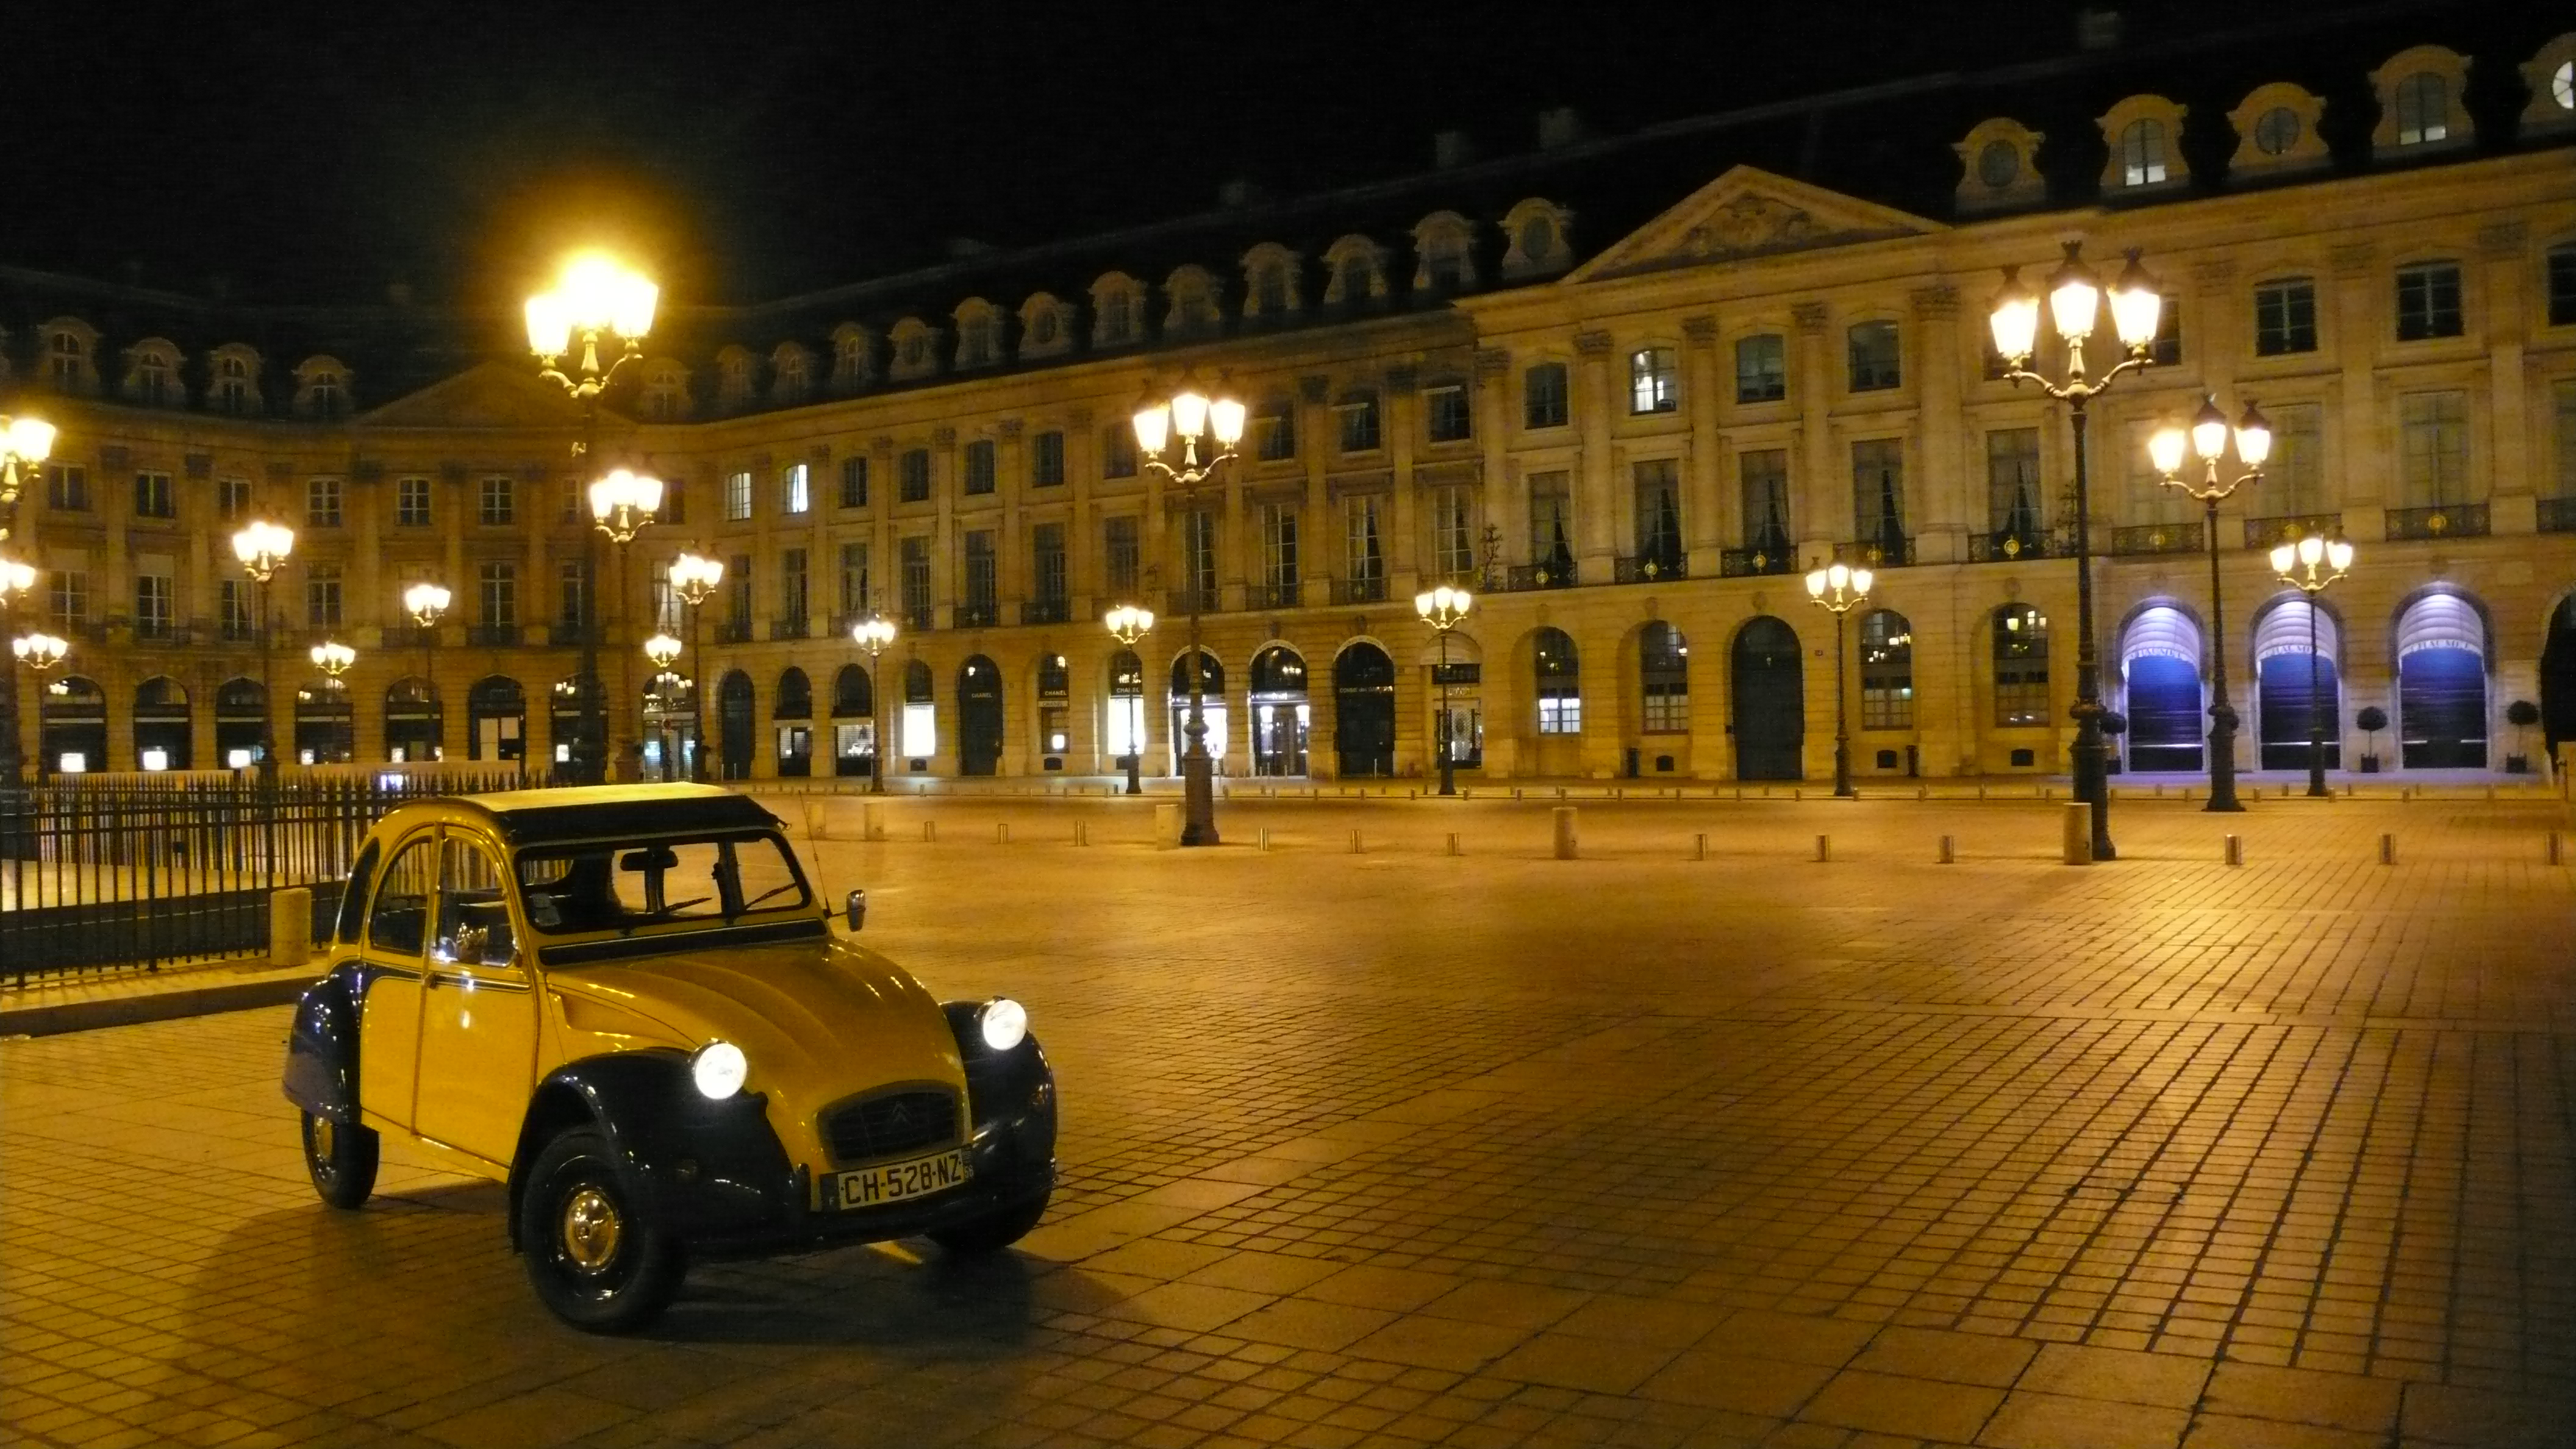 2CV Paris Tour : Visit Paris by 2CV! Place Vendôme by night